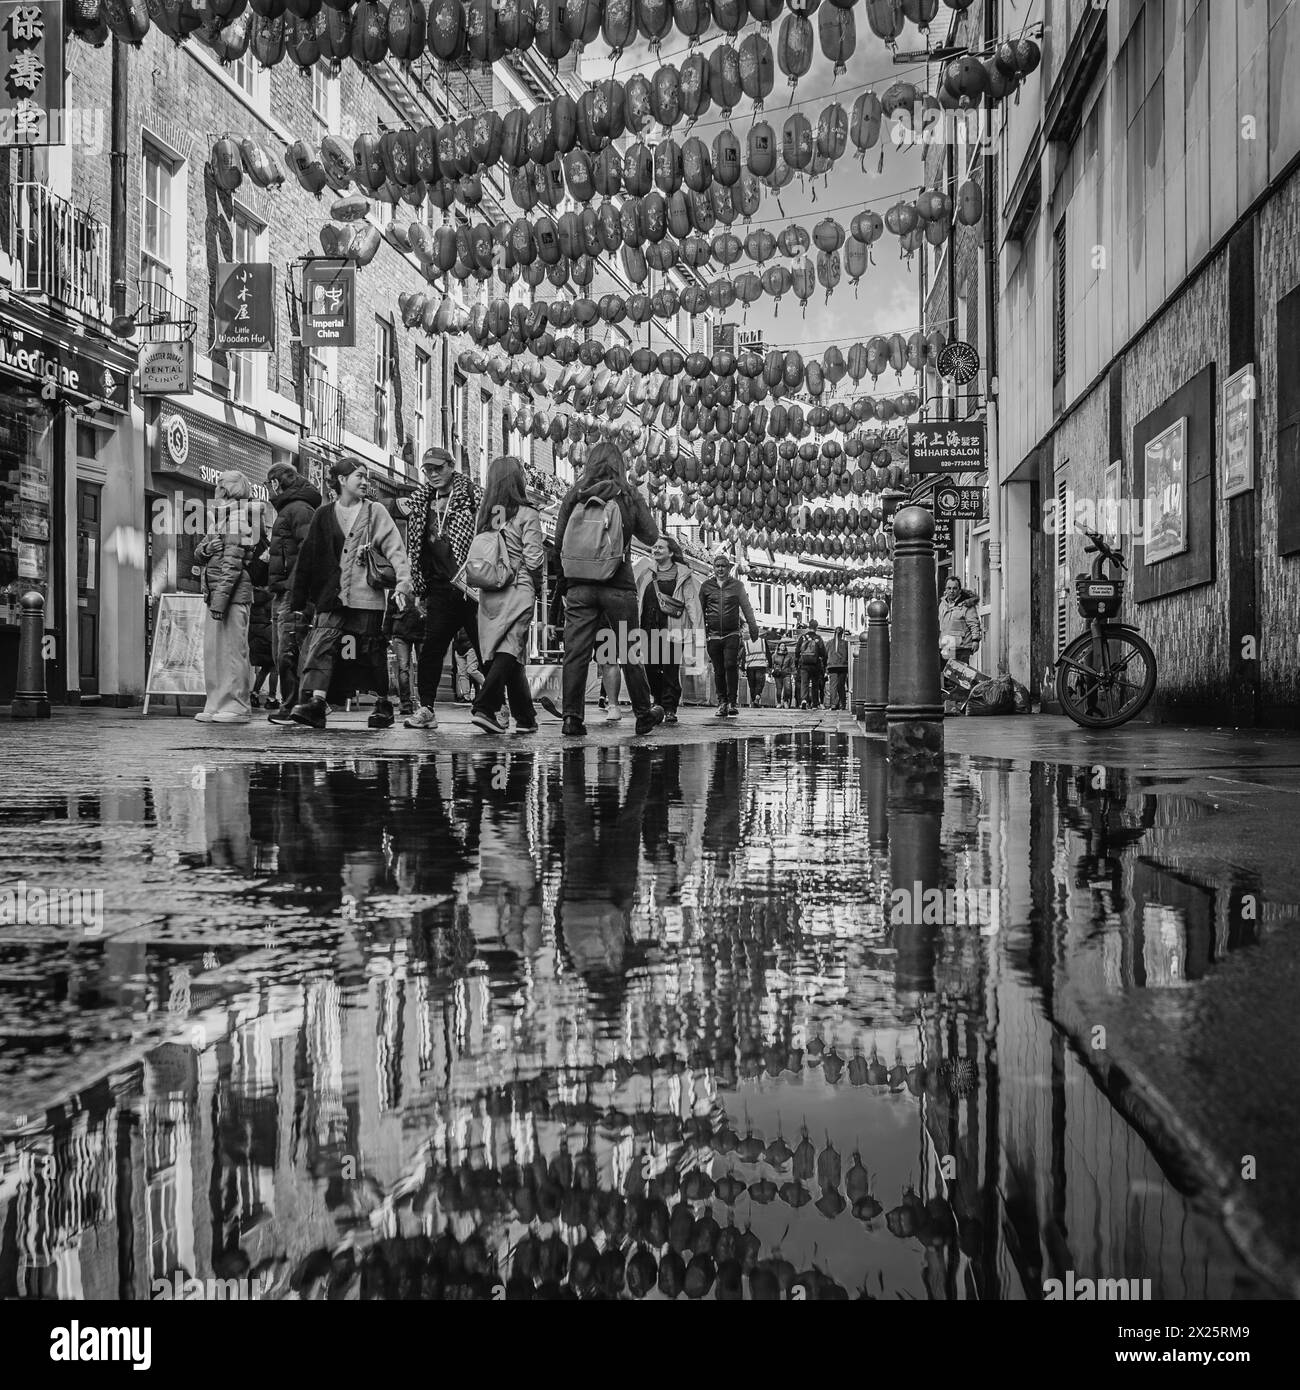 Image en noir et blanc de touristes marchant dans une rue de chinatown, Londres. Banque D'Images